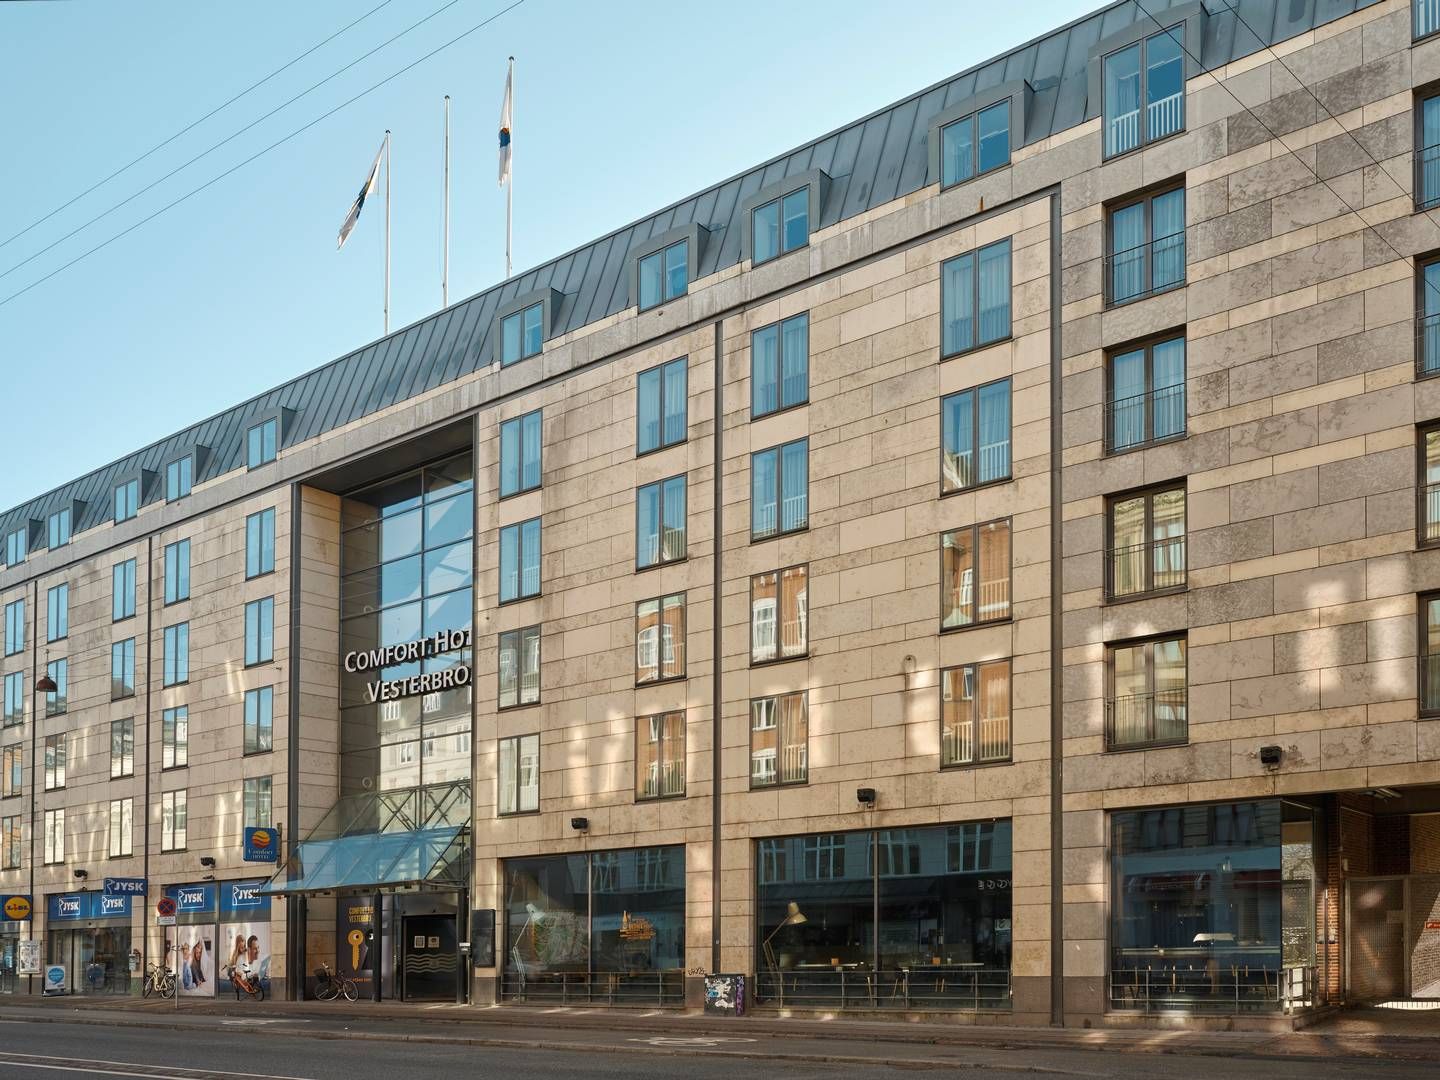 Amerikanske Starwood Capital solgte tidligere på måneden dette hotel på Vesterbro i København for omkring 675 mio. kr. Samlet blev det handlet ejendomme som selskabshandler for over 6 mia. kr. i oktober og november. | Foto: Pr / Comfort Hotel